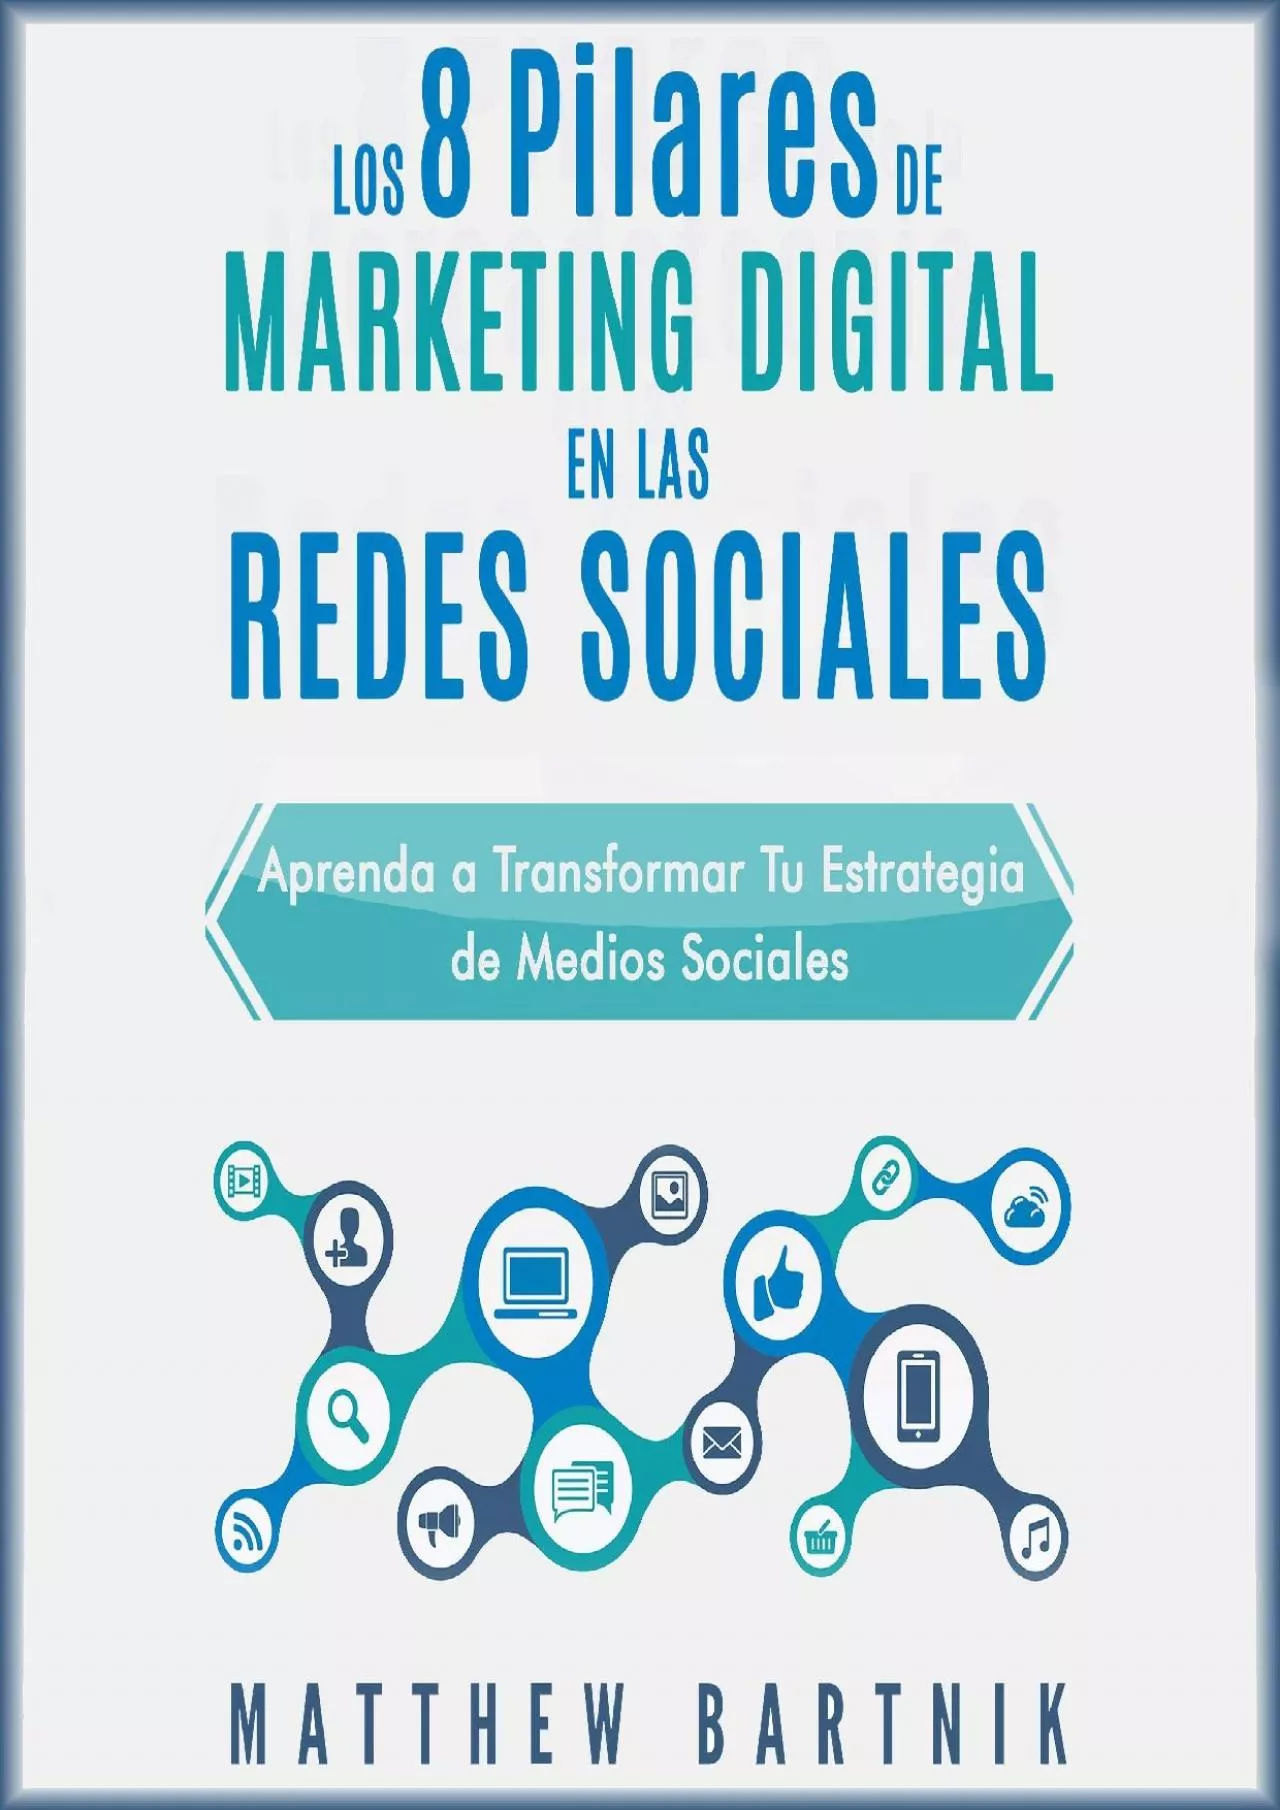 Los 8 Pilares de Marketing Digital en las Redes Sociales [The 8 Pillars of Digital Marketing